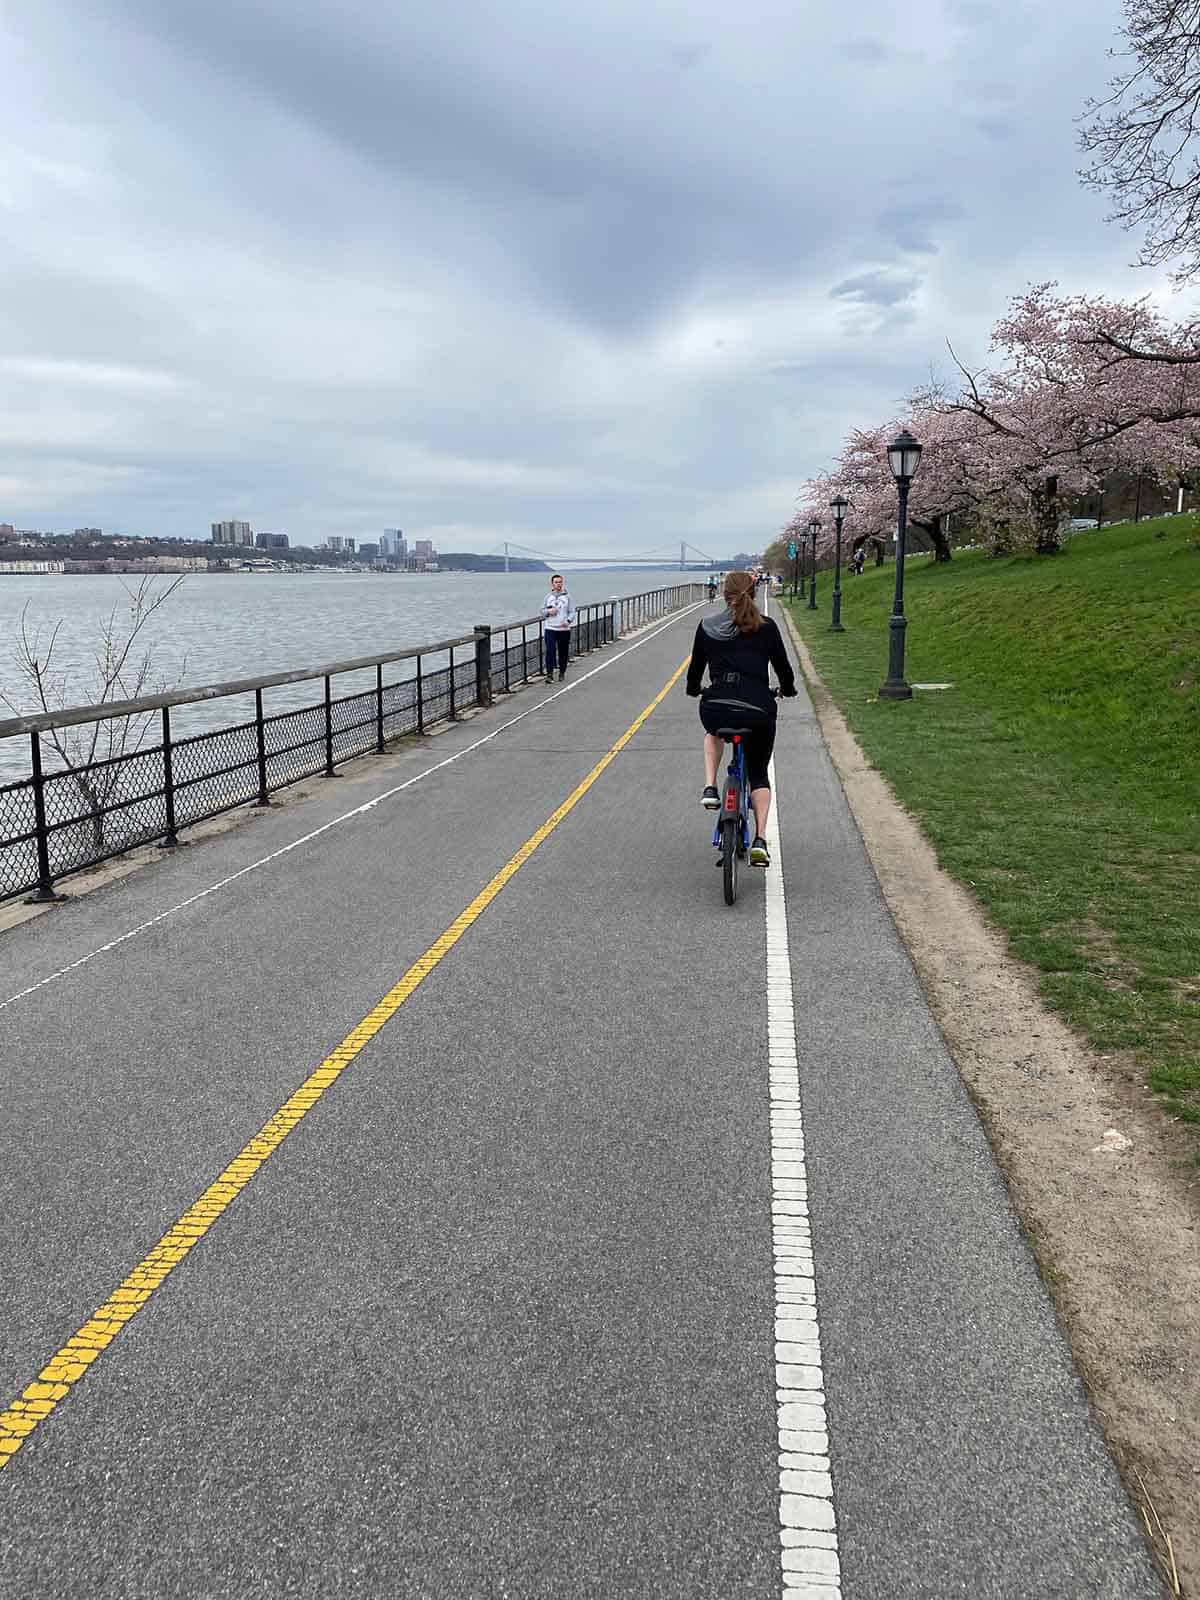 Me riding a bike along the Hudson River.